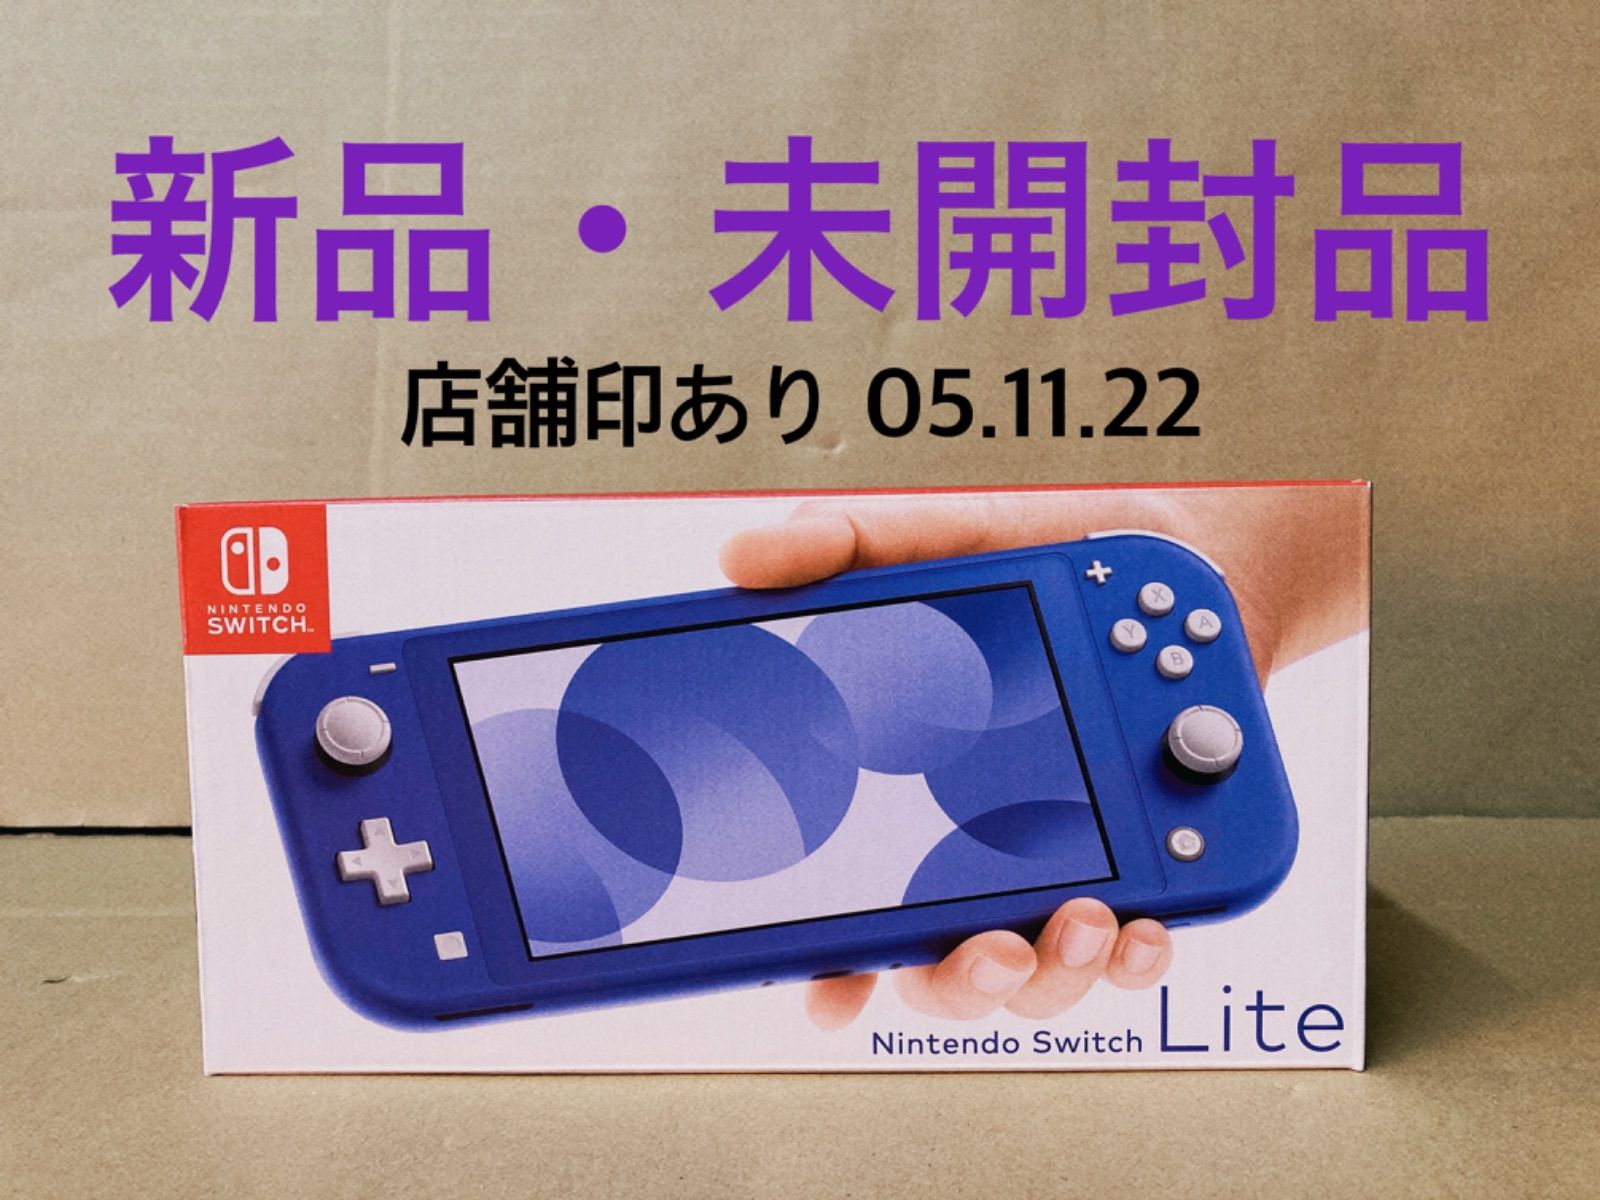 未開封品です。Nintendo Switch Lite